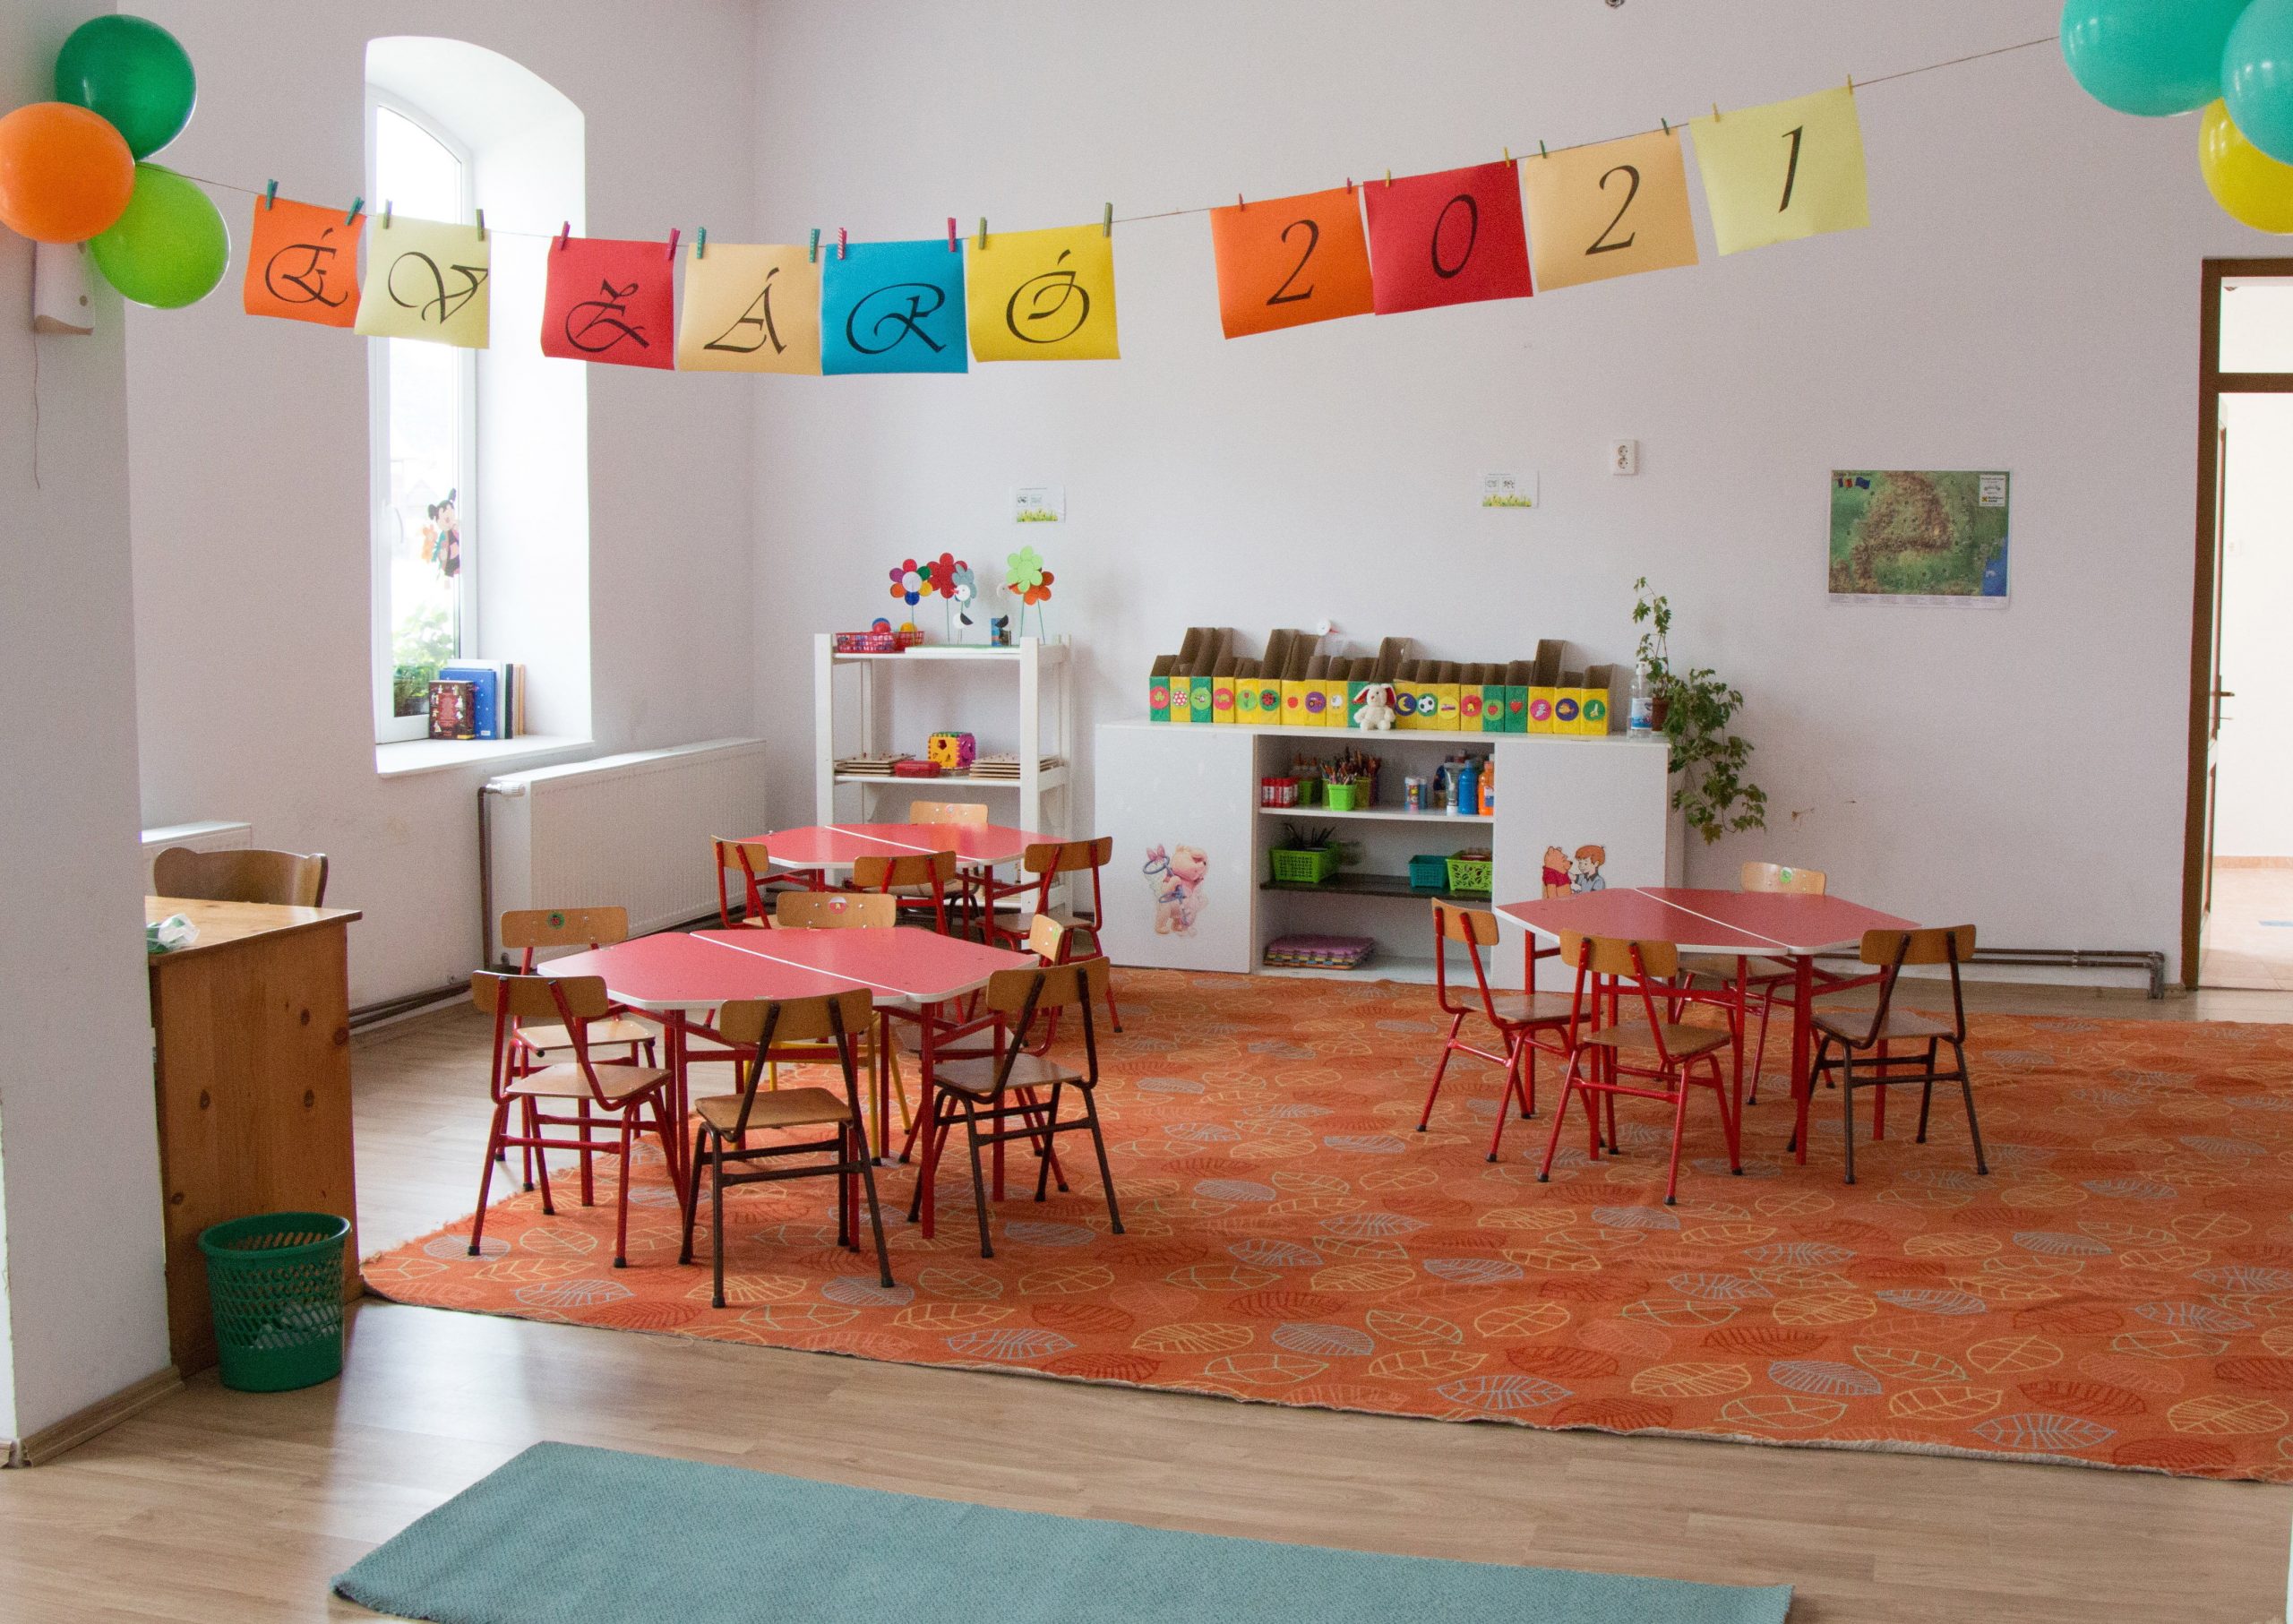 Katholischer Kindergarten im Szeklerland mit ungarischem Zuschuss eingeweiht